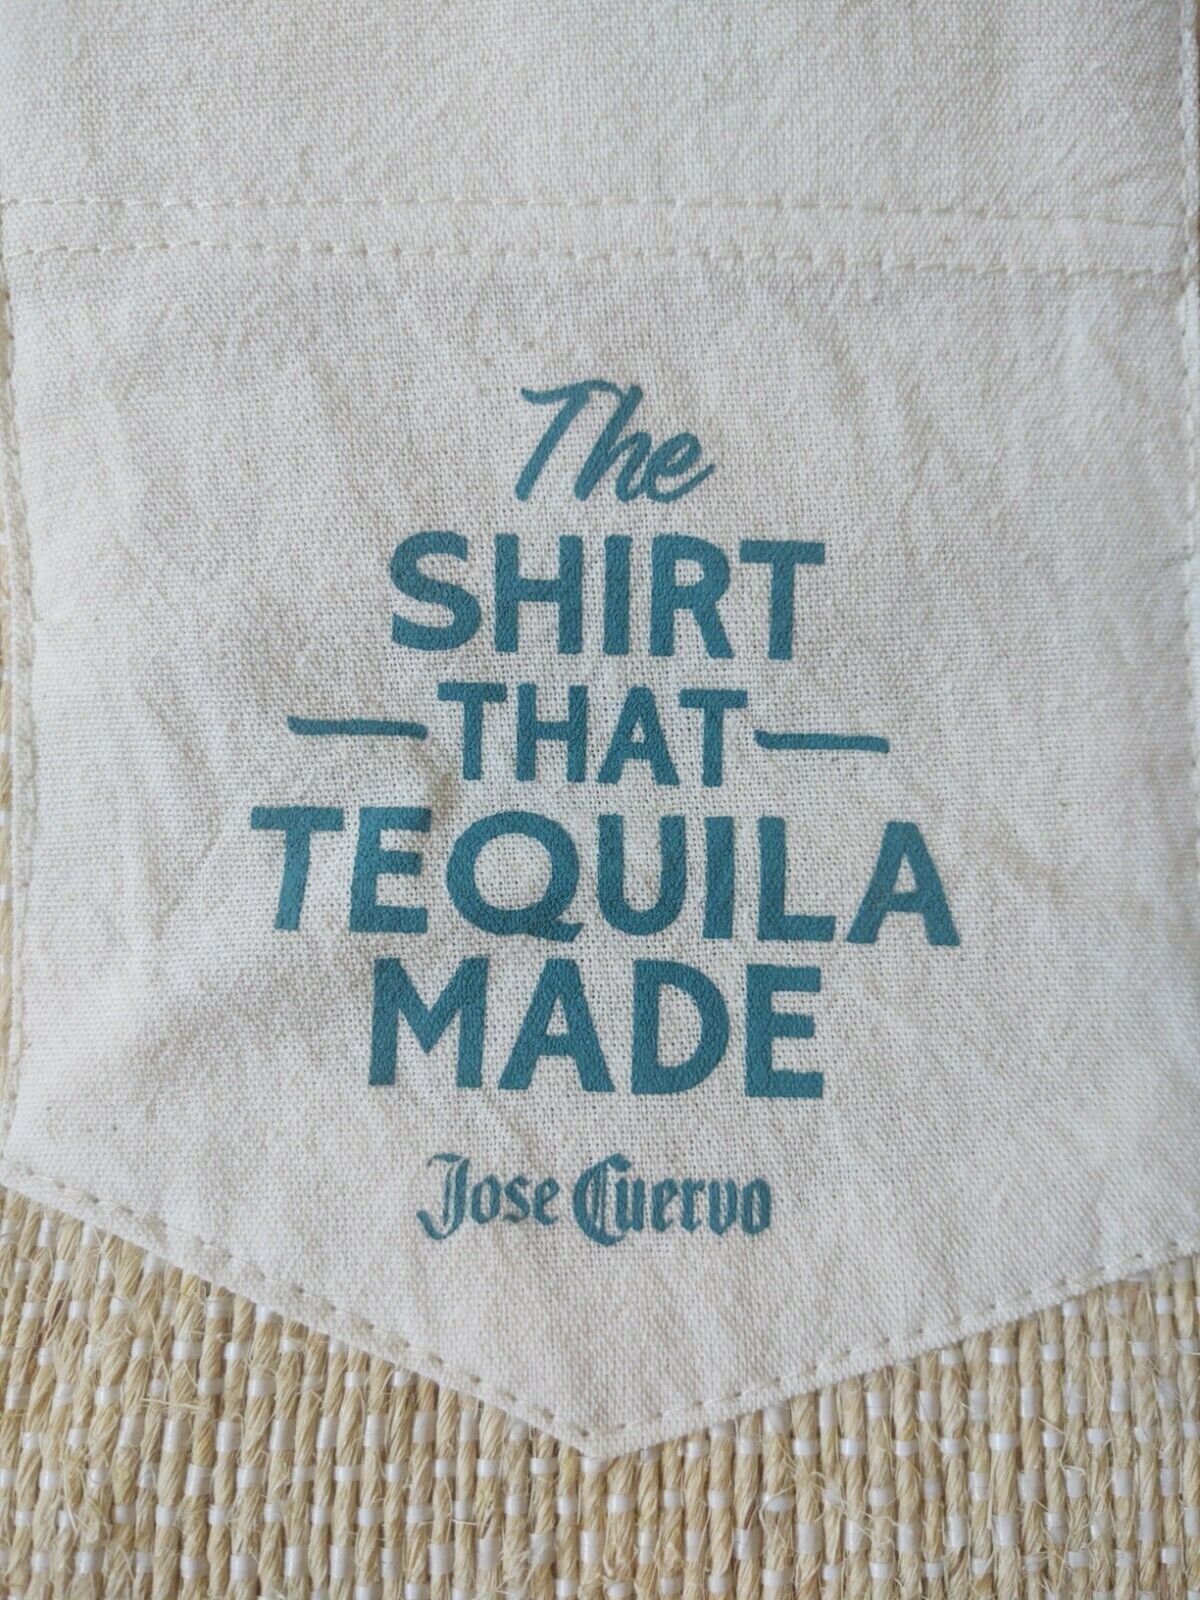 RARE Jose Cuervo Promo Shirt 